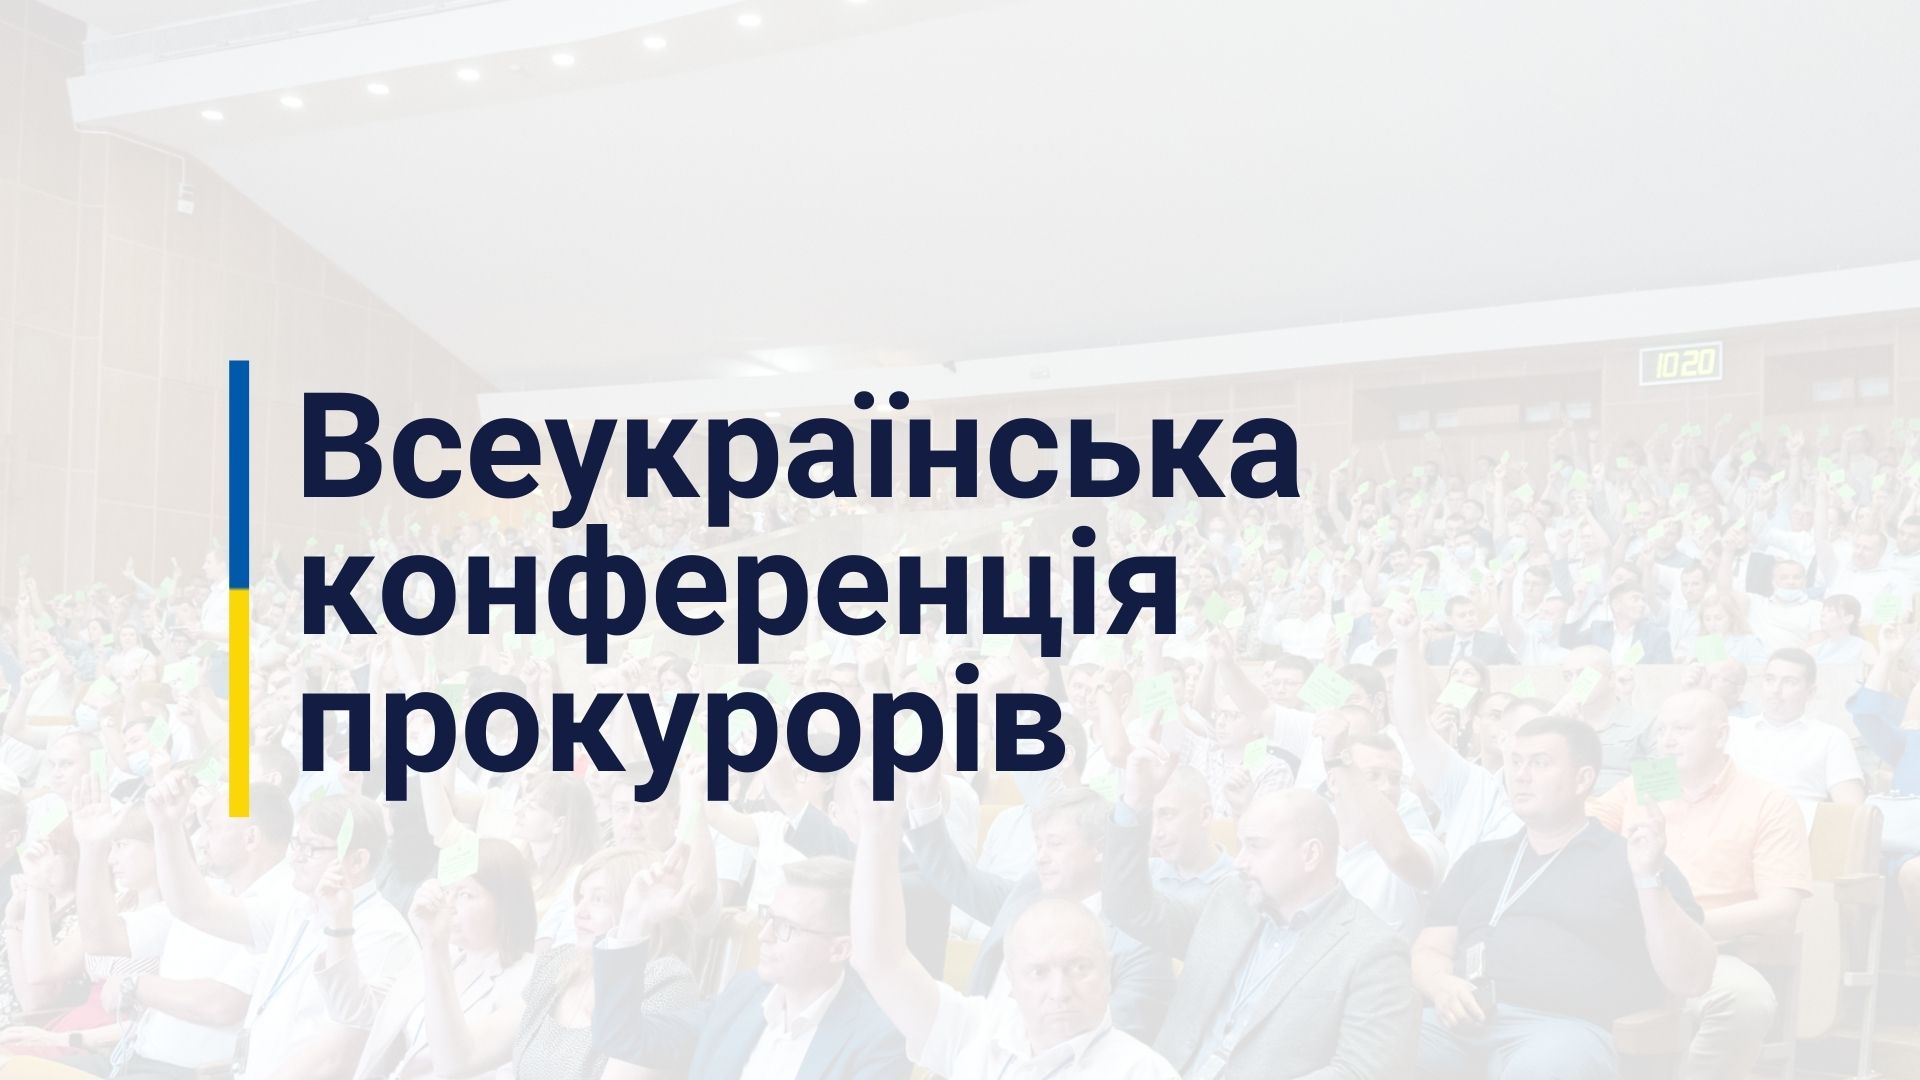 Оголошення про проведення всеукраїнської конференції прокурорів